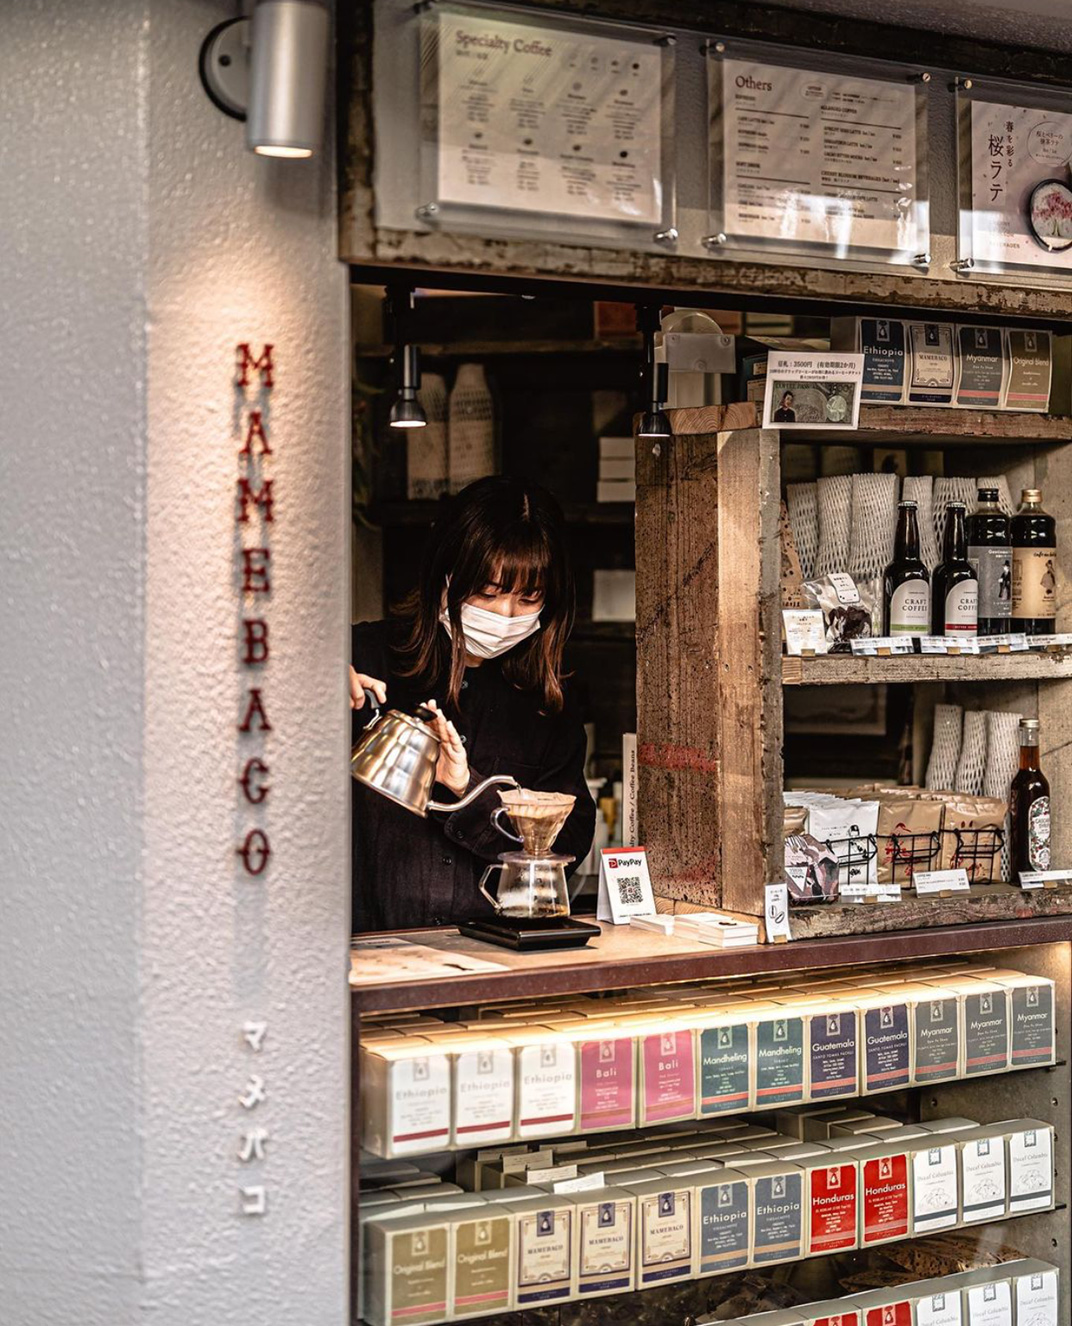 橱窗式咖啡店Mamebaco 日本 东京 上海 咖啡店 橱窗 复古 档口 logo设计 vi设计 空间设计